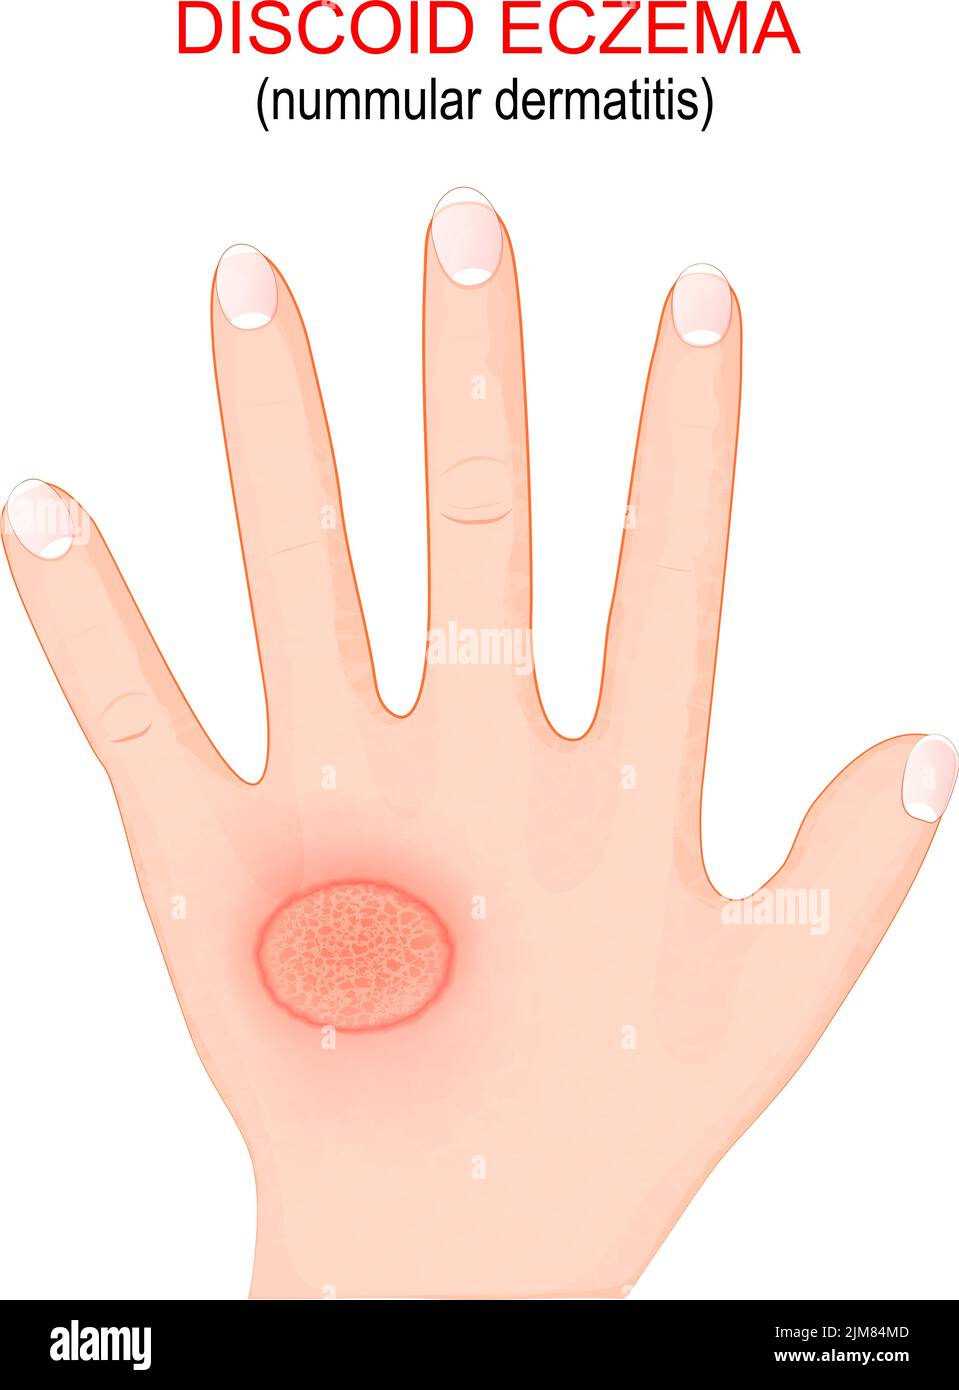 Nummuläre Dermatitis. Diskoides Ekzem ist eine chronische Hauterkrankung, die dazu führt, dass die Haut juckt, geschwollen und in kreisförmigen Flecken rissig wird. Nahaufnahme Stock Vektor